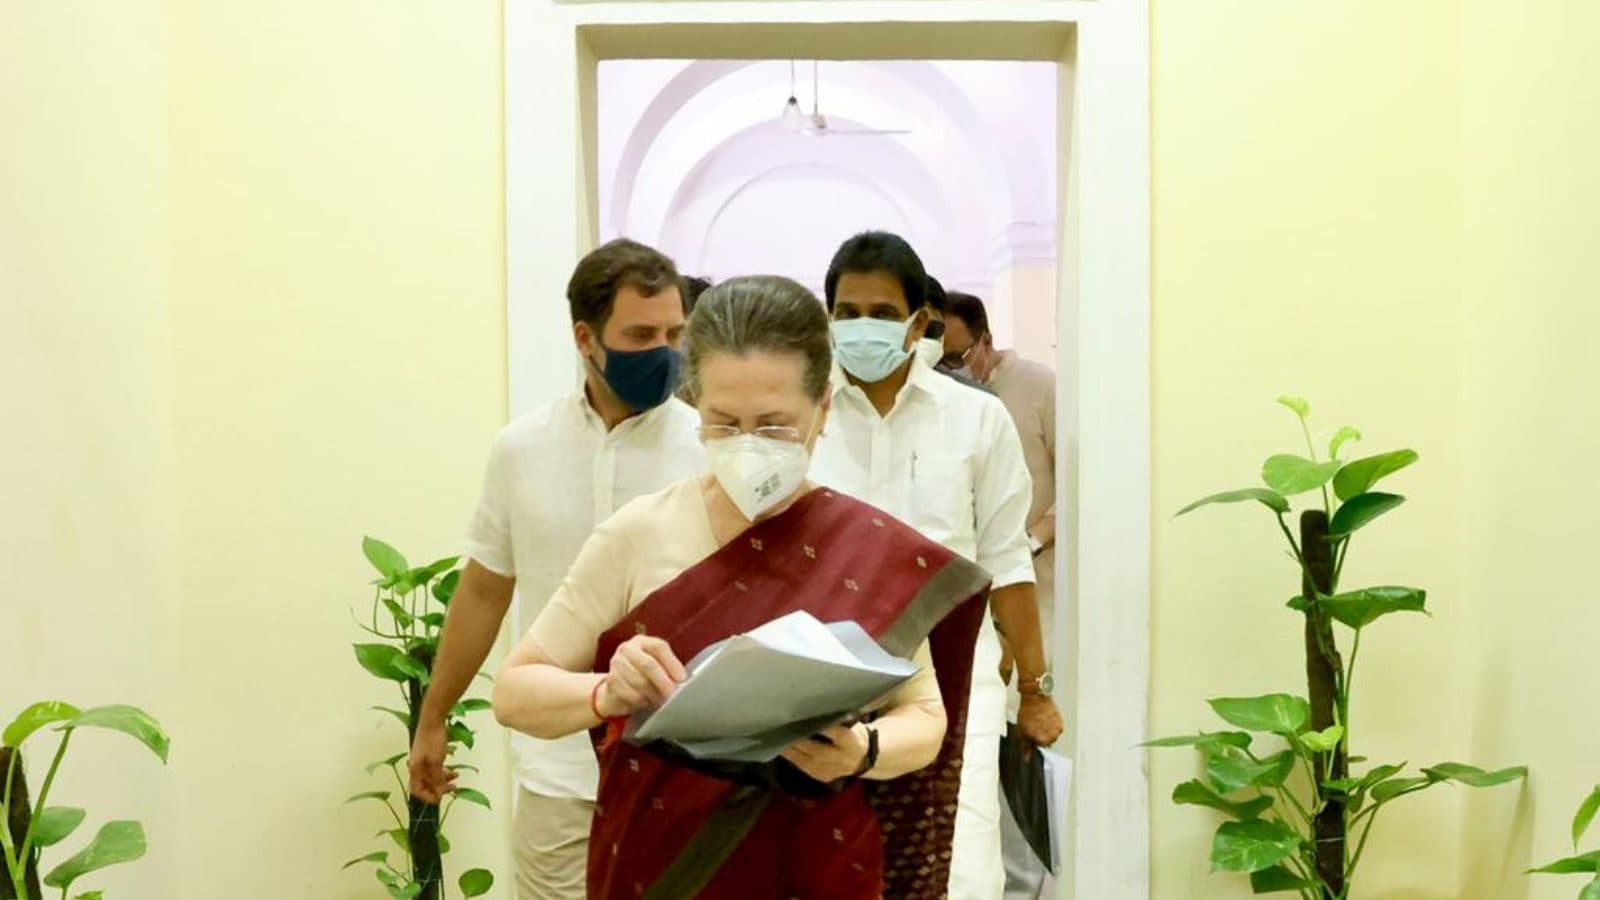 श्वसन संक्रमण से उबरने वाली सोनिया गांधी, अस्पताल का कहना है